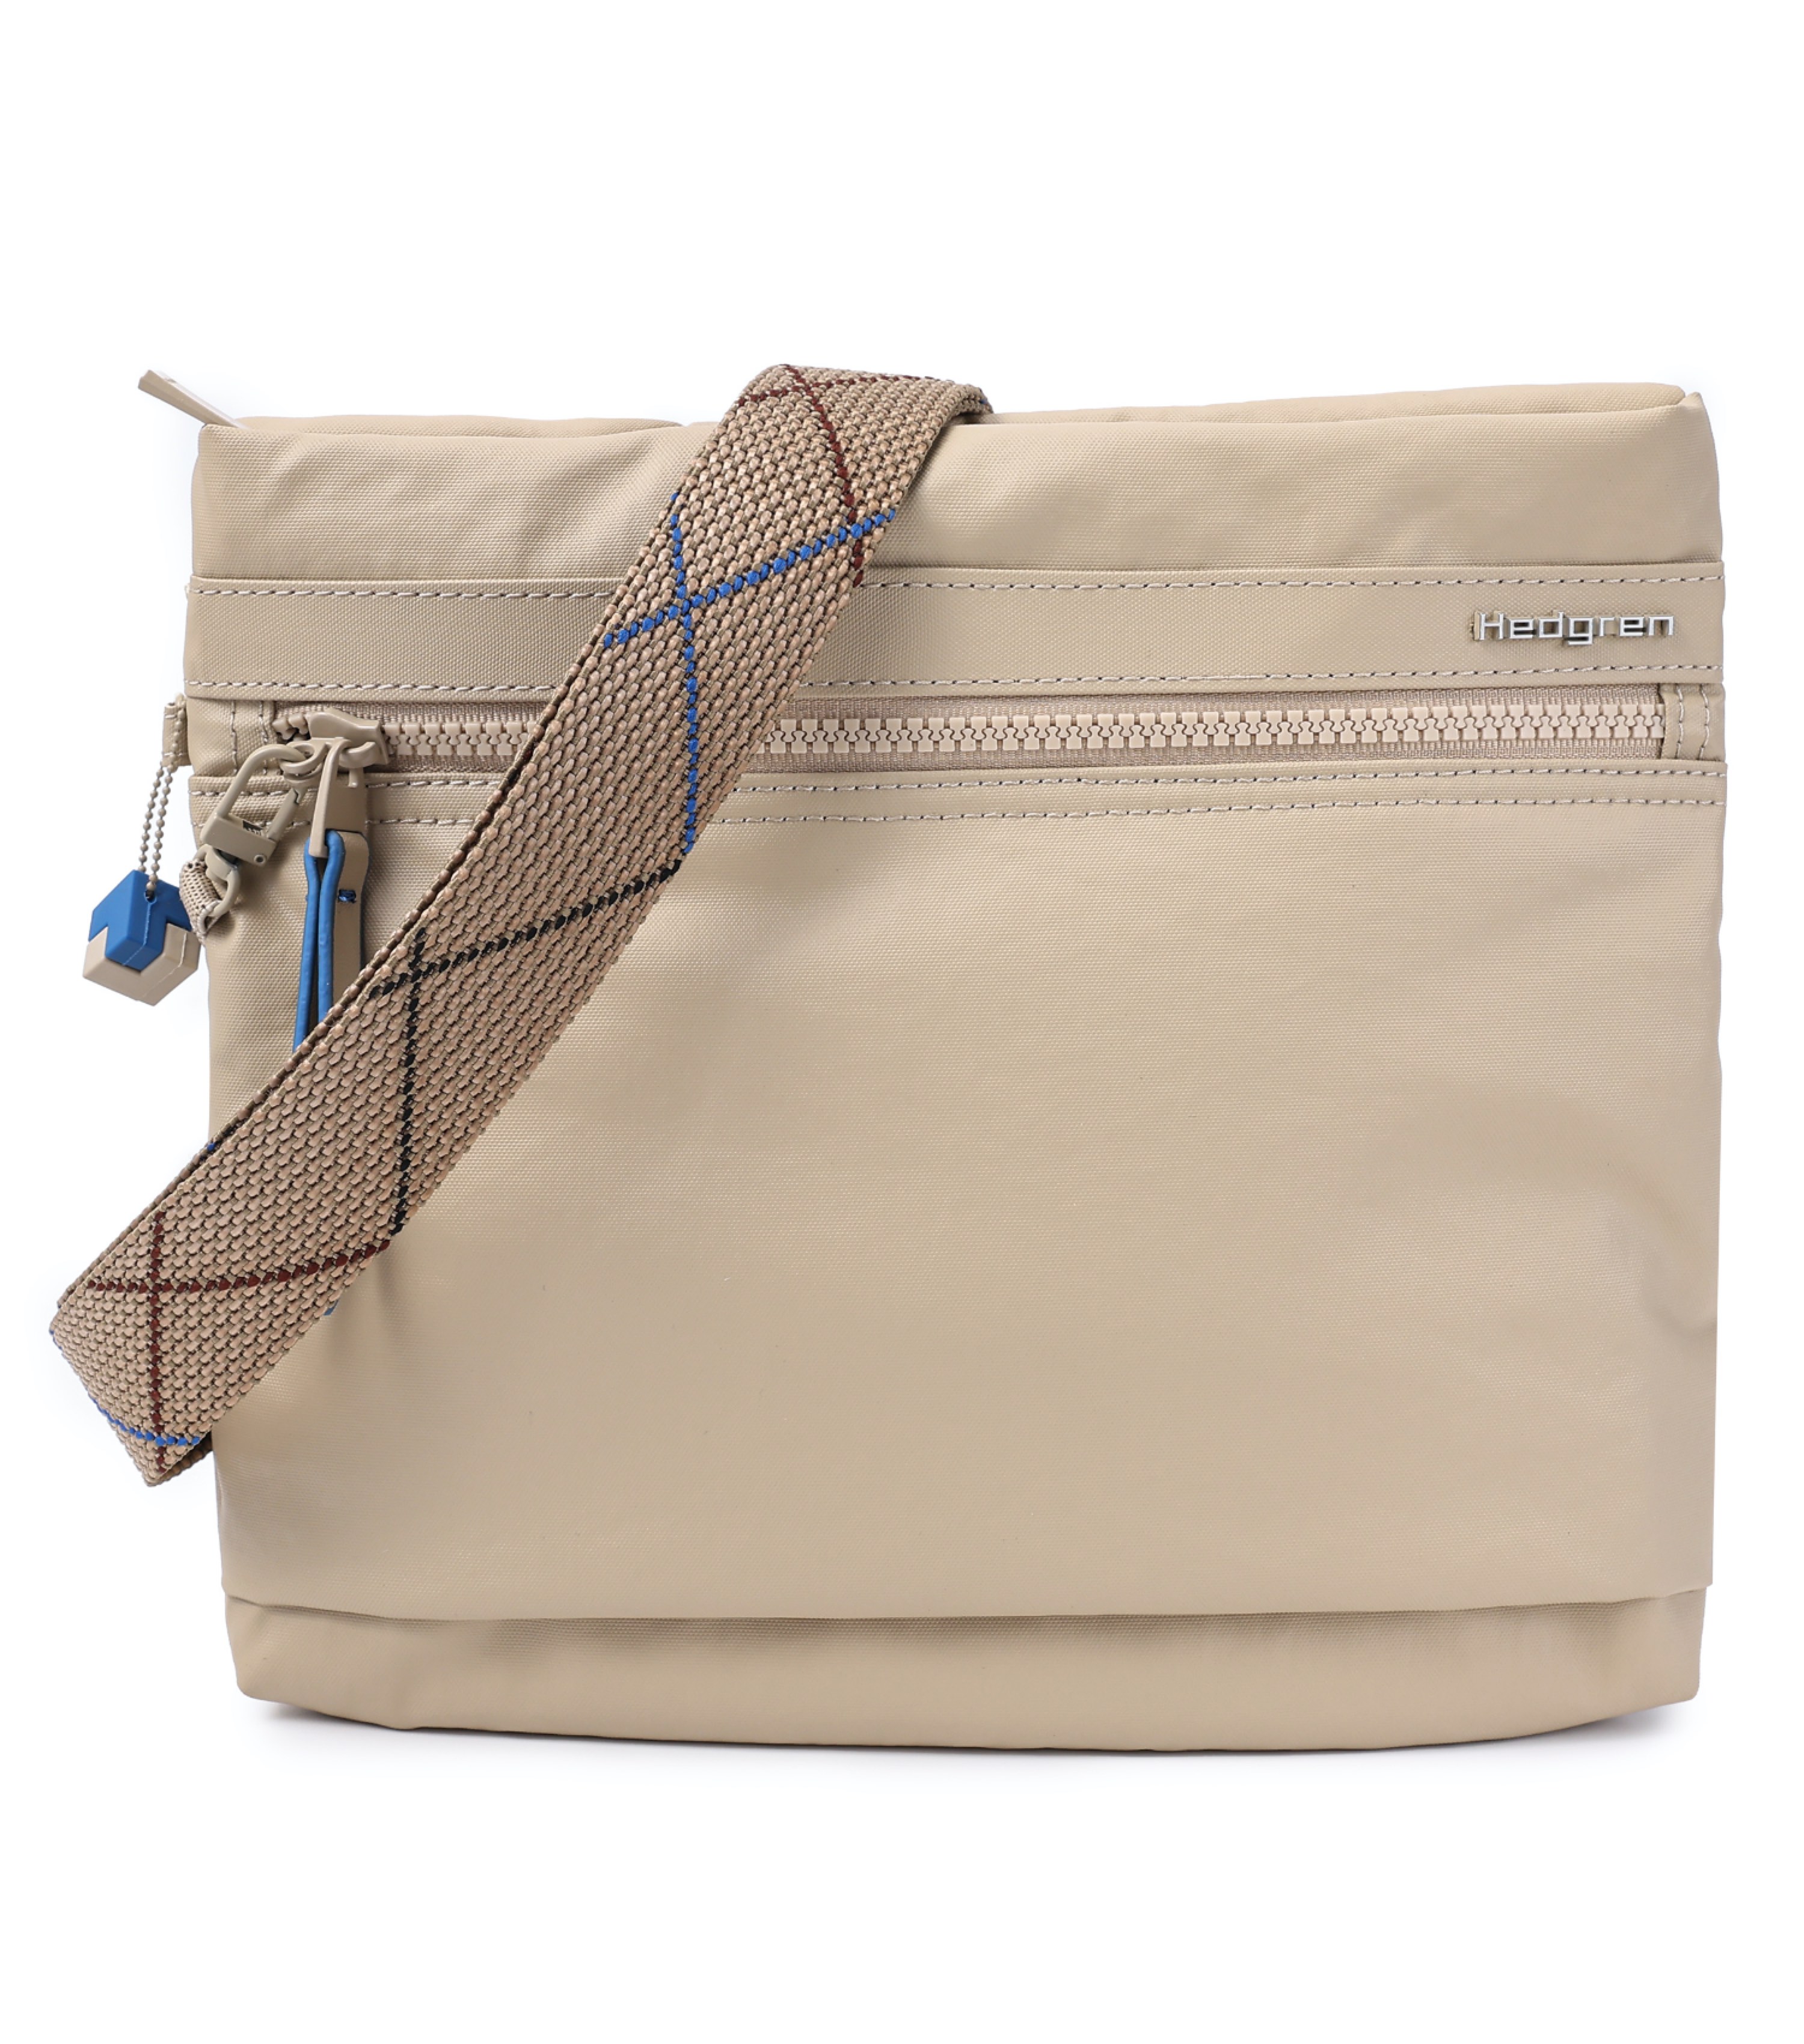 Hedgren FAITH Crossover Shoulder Bag with RFID Pocket and Safelock